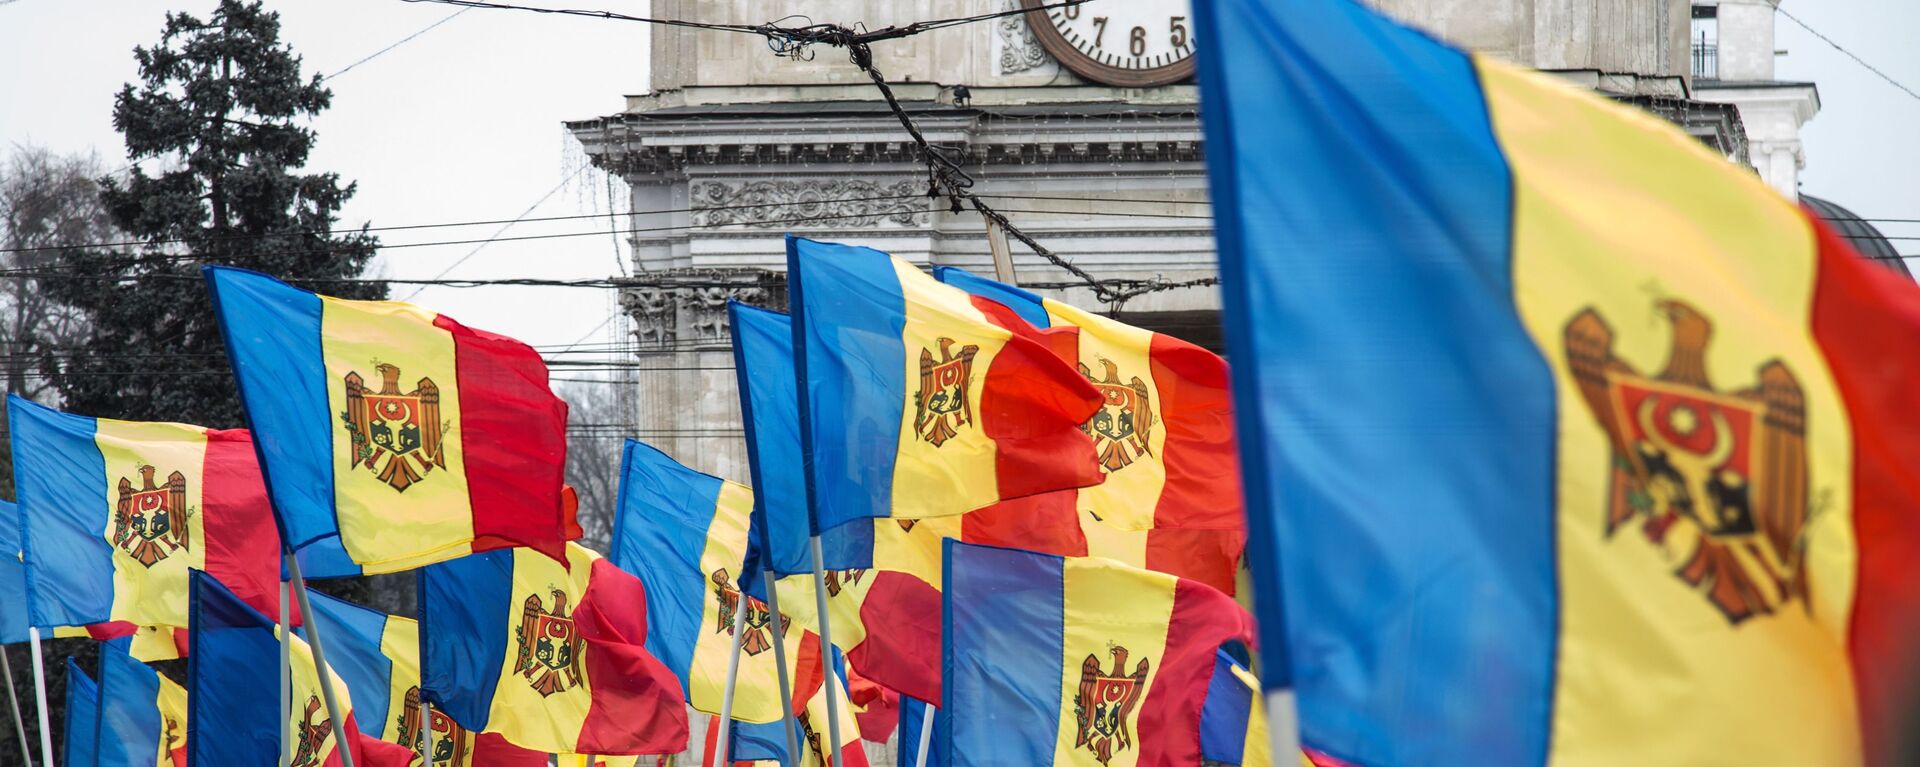 Молдавске заставе на протесту опозиције у Кишињеву - Sputnik Србија, 1920, 25.03.2018